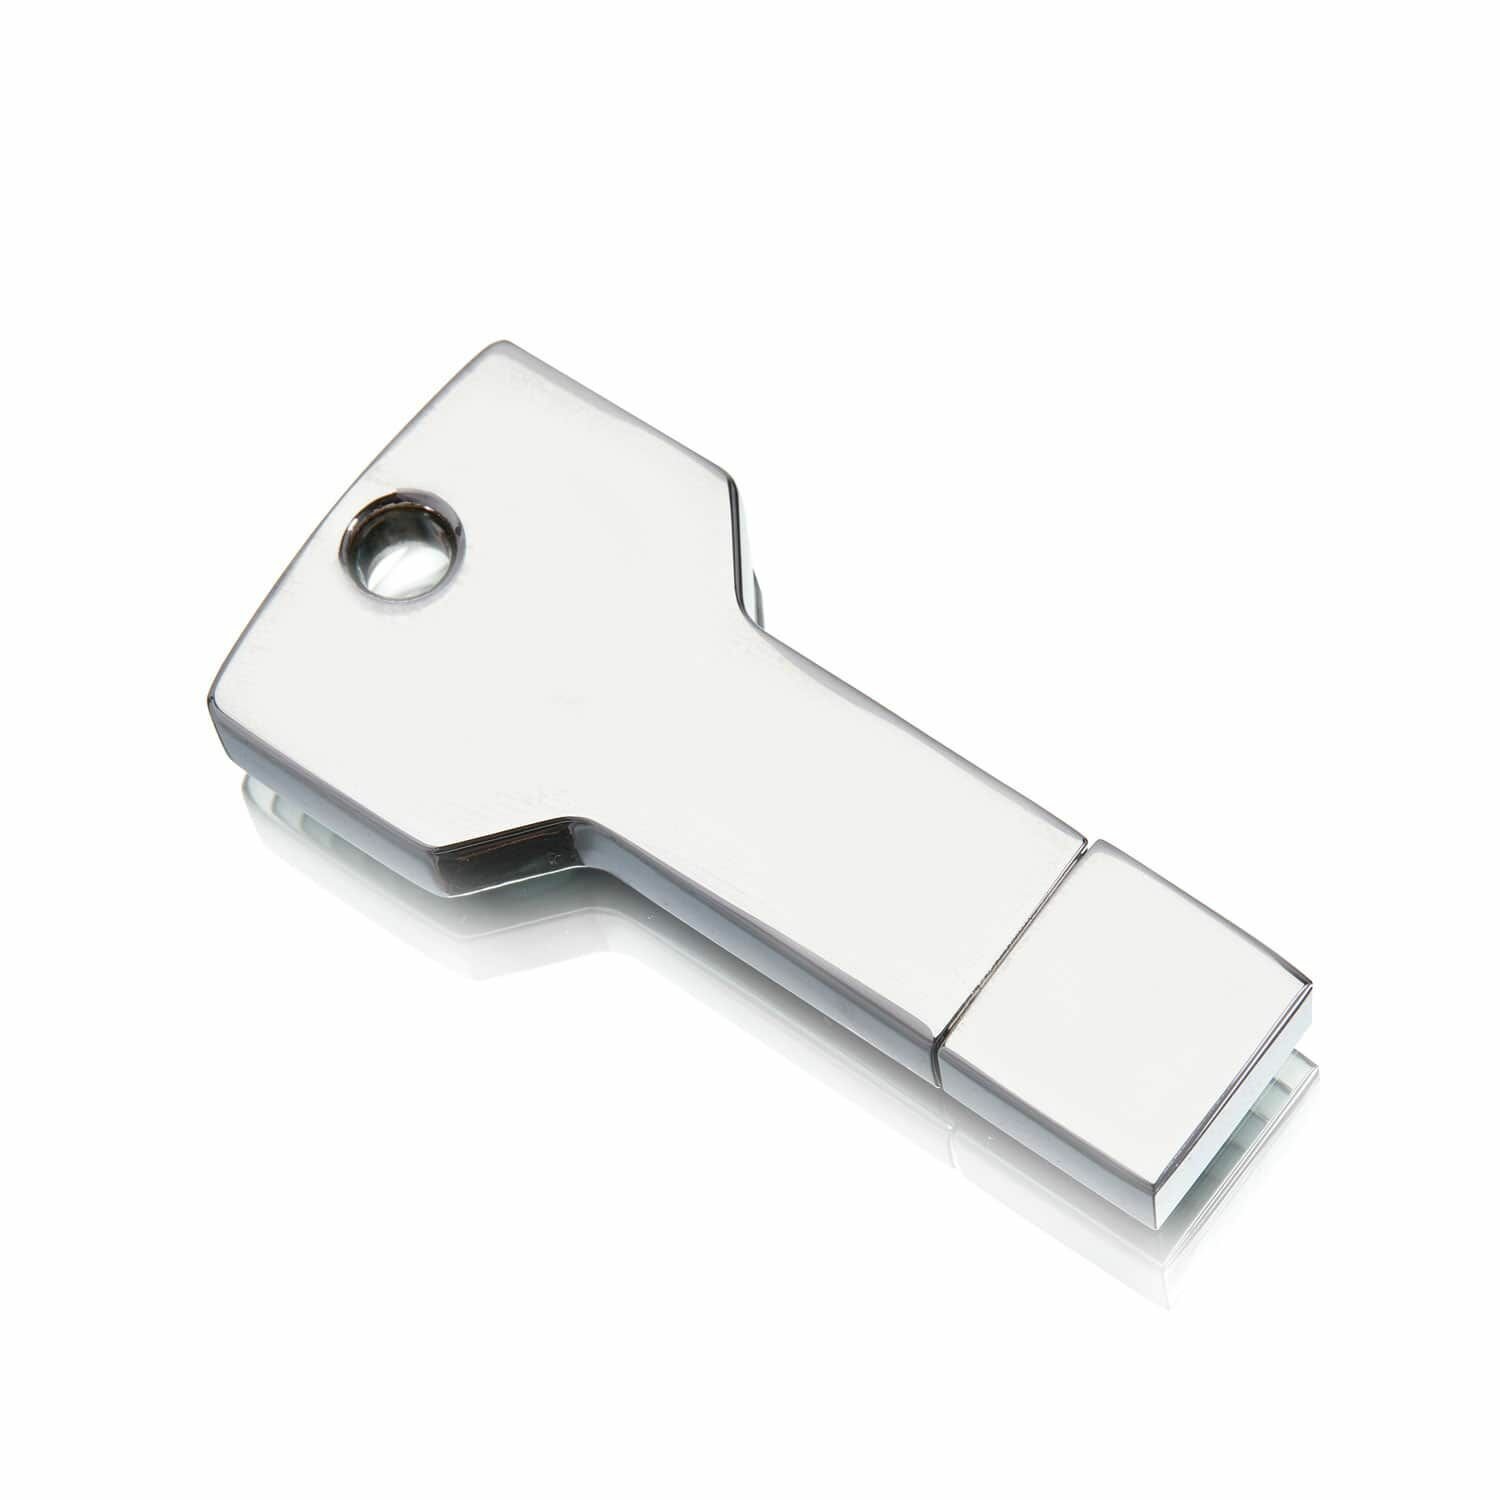 Флешка в виде ключа, 16 ГБ, USB 3.0, серебряная, арт. F35